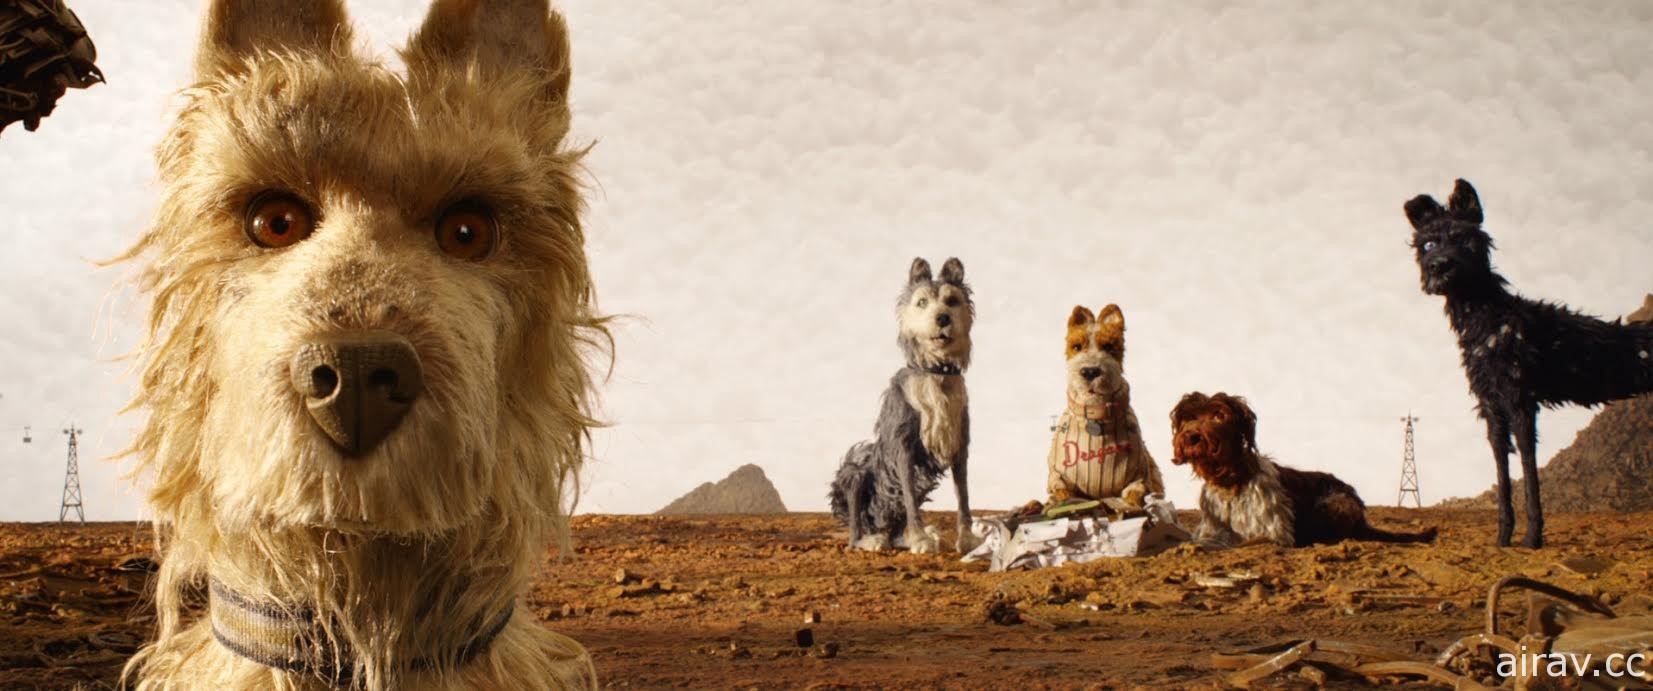 威斯安德森《犬之岛》获选为金马奇幻影展开幕片 4 月 13 日正式揭幕